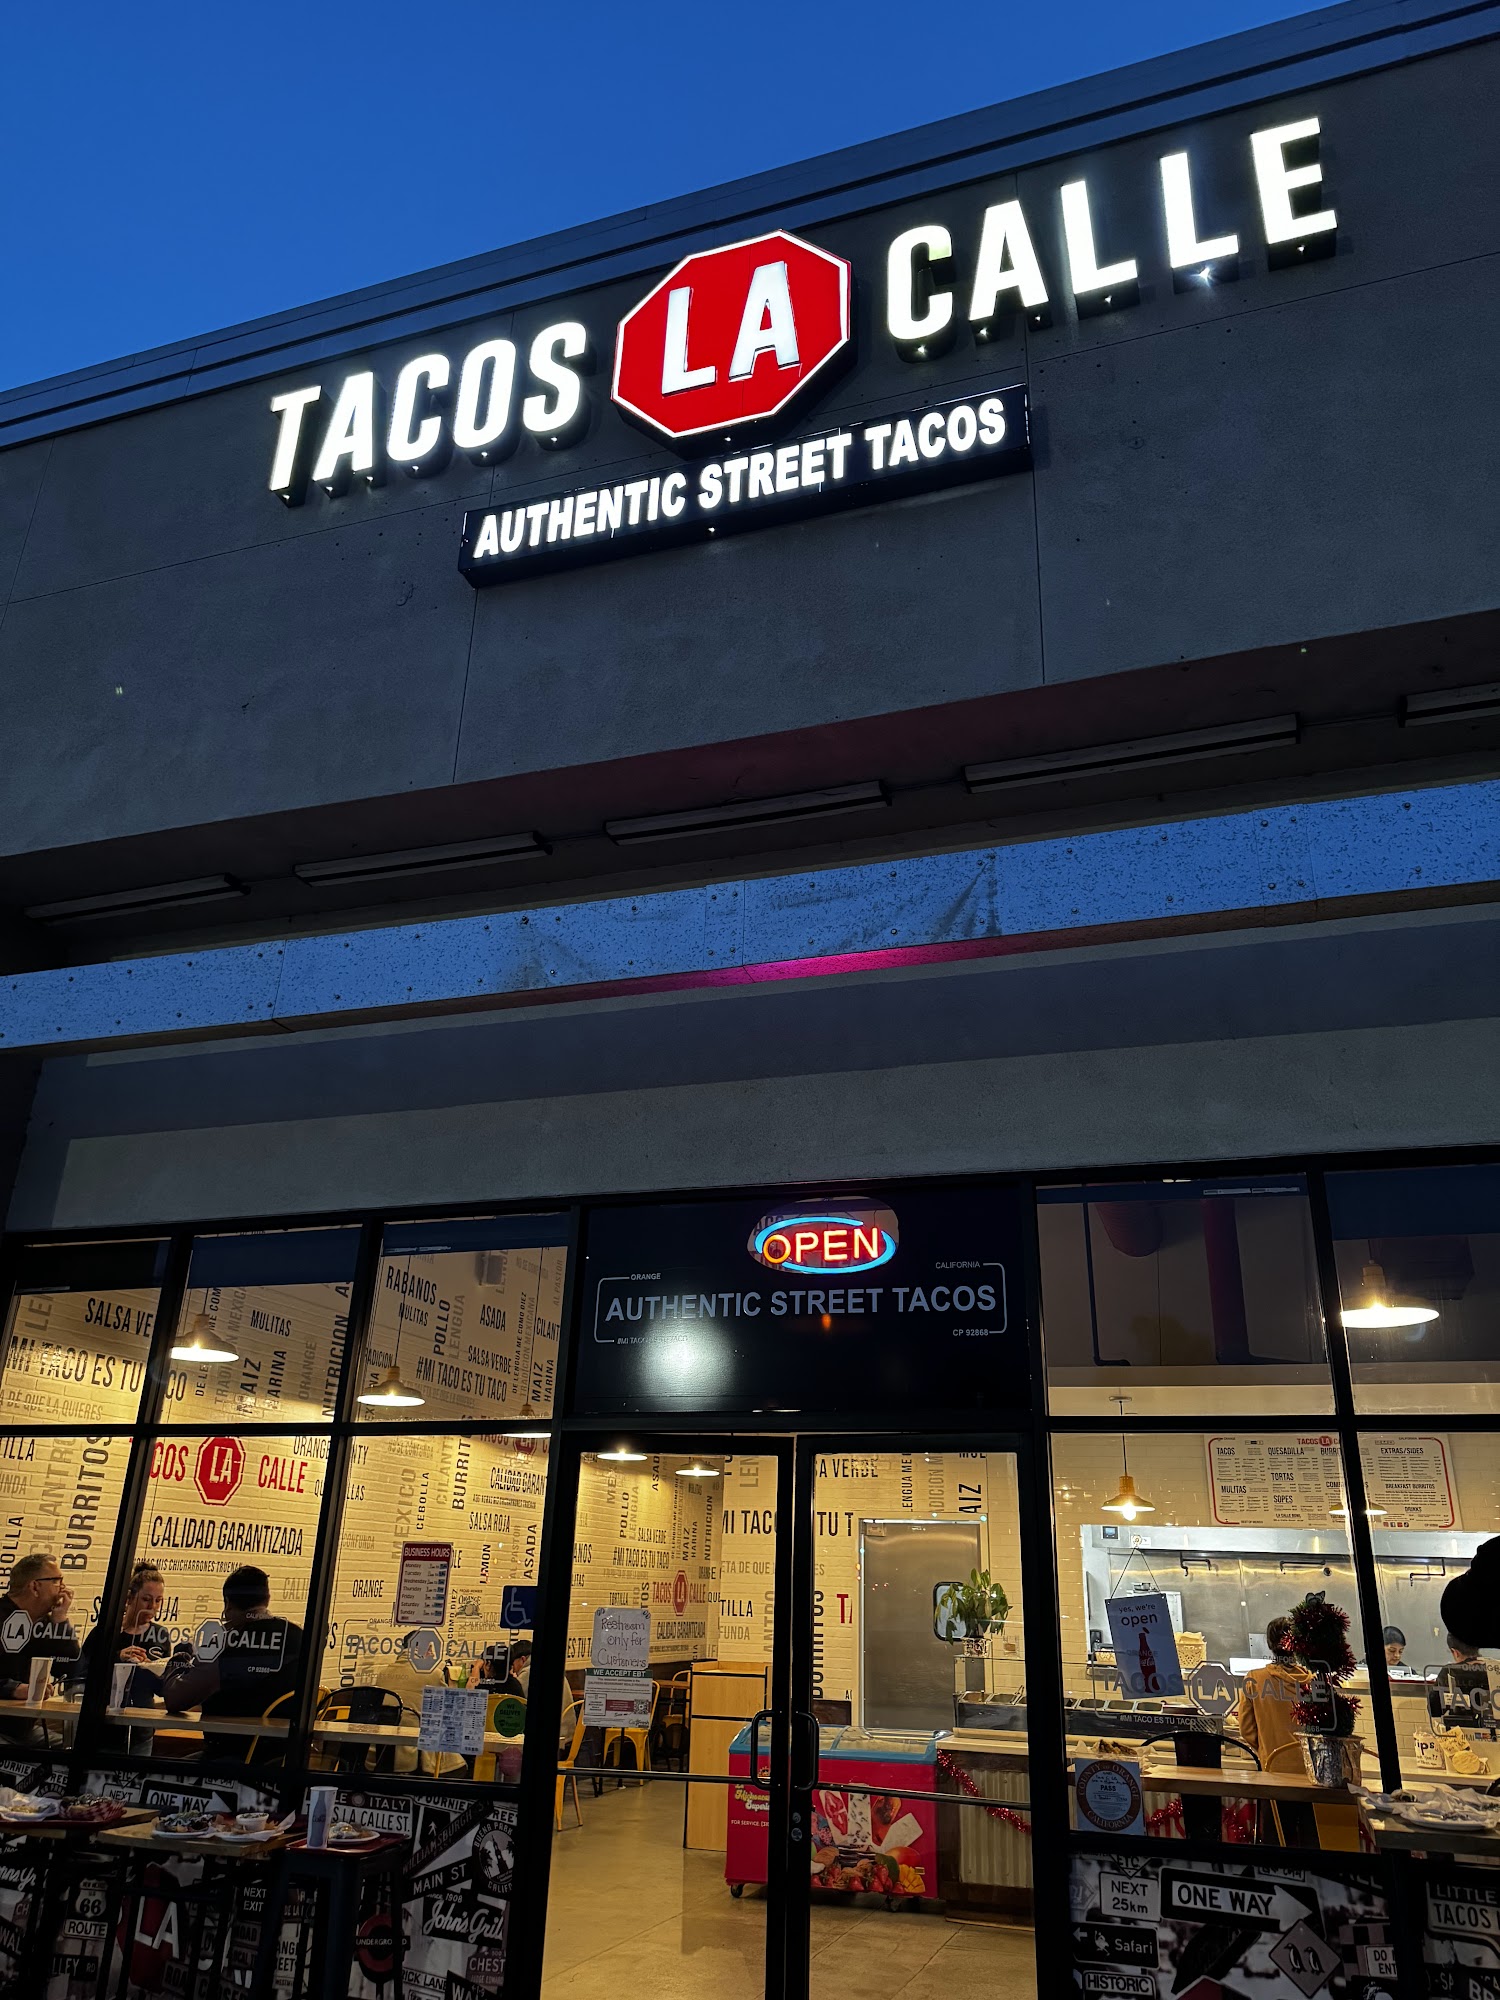 Tacos LA Calle